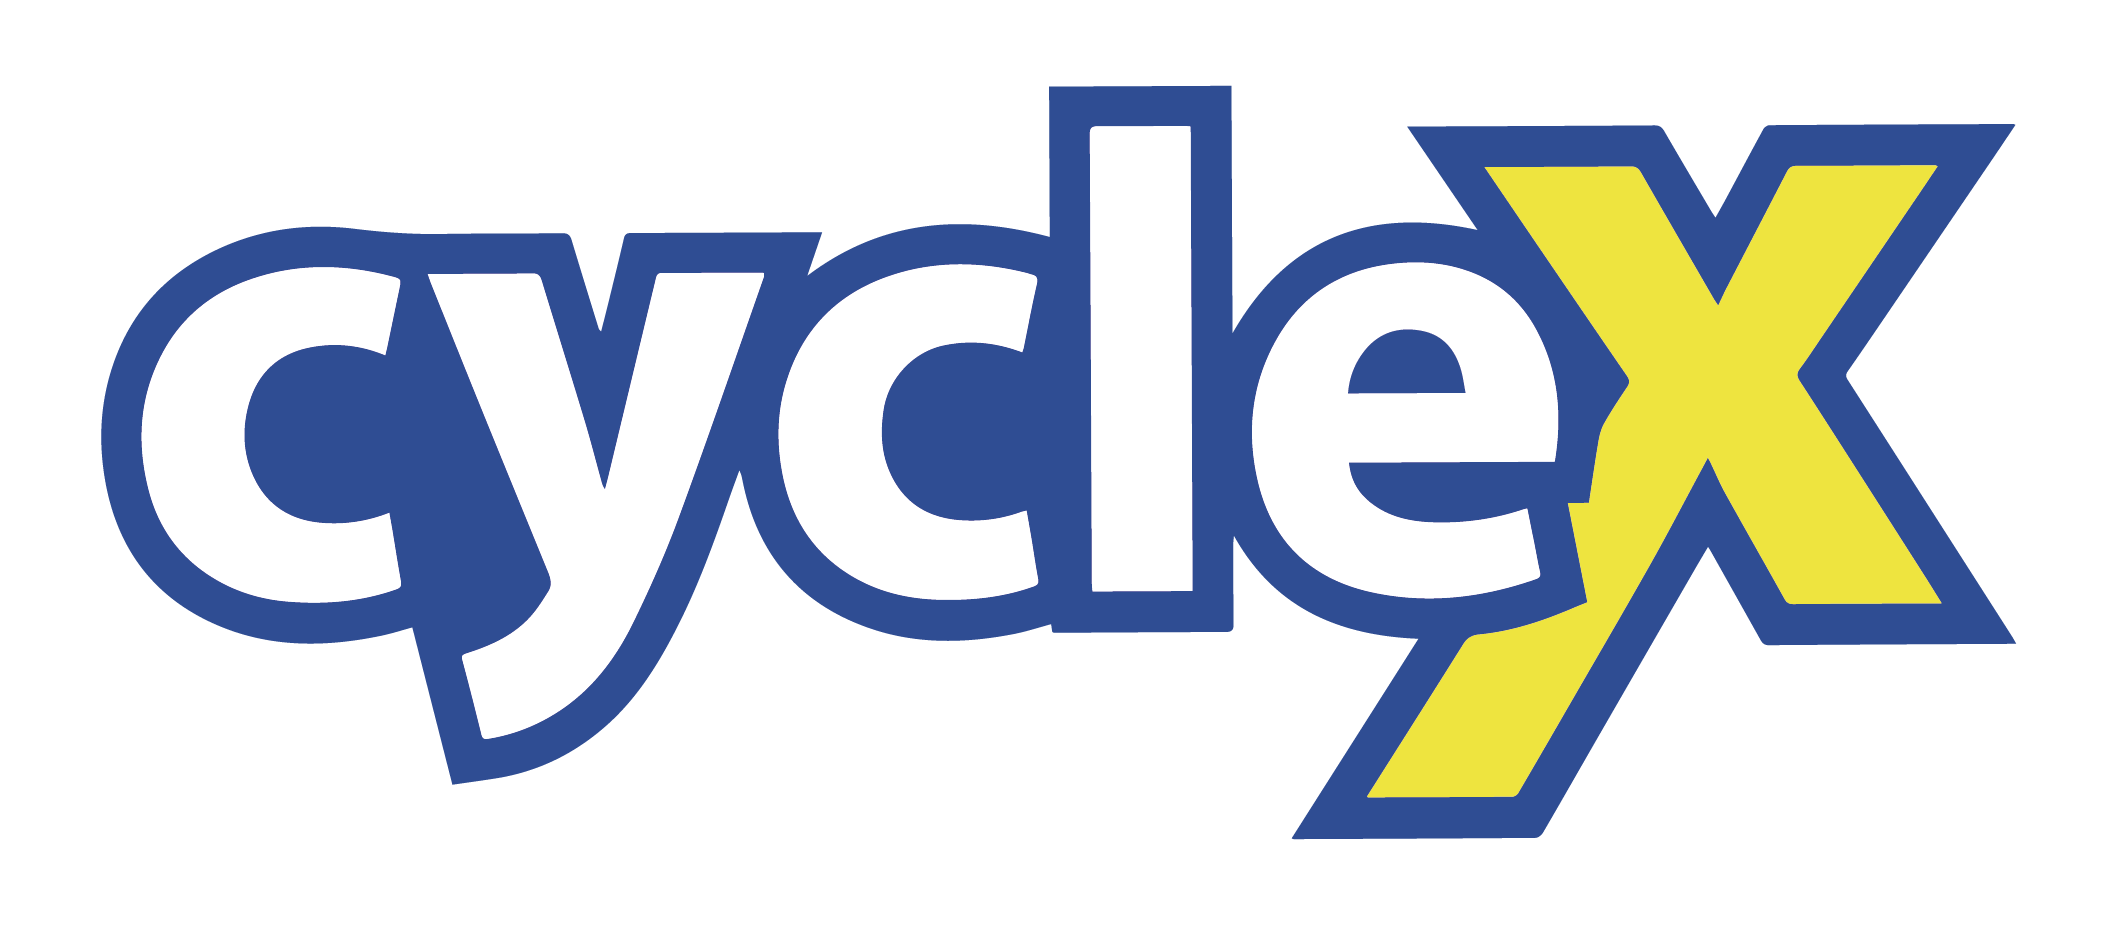 Cyclex - Tudo de bike em um só lugar